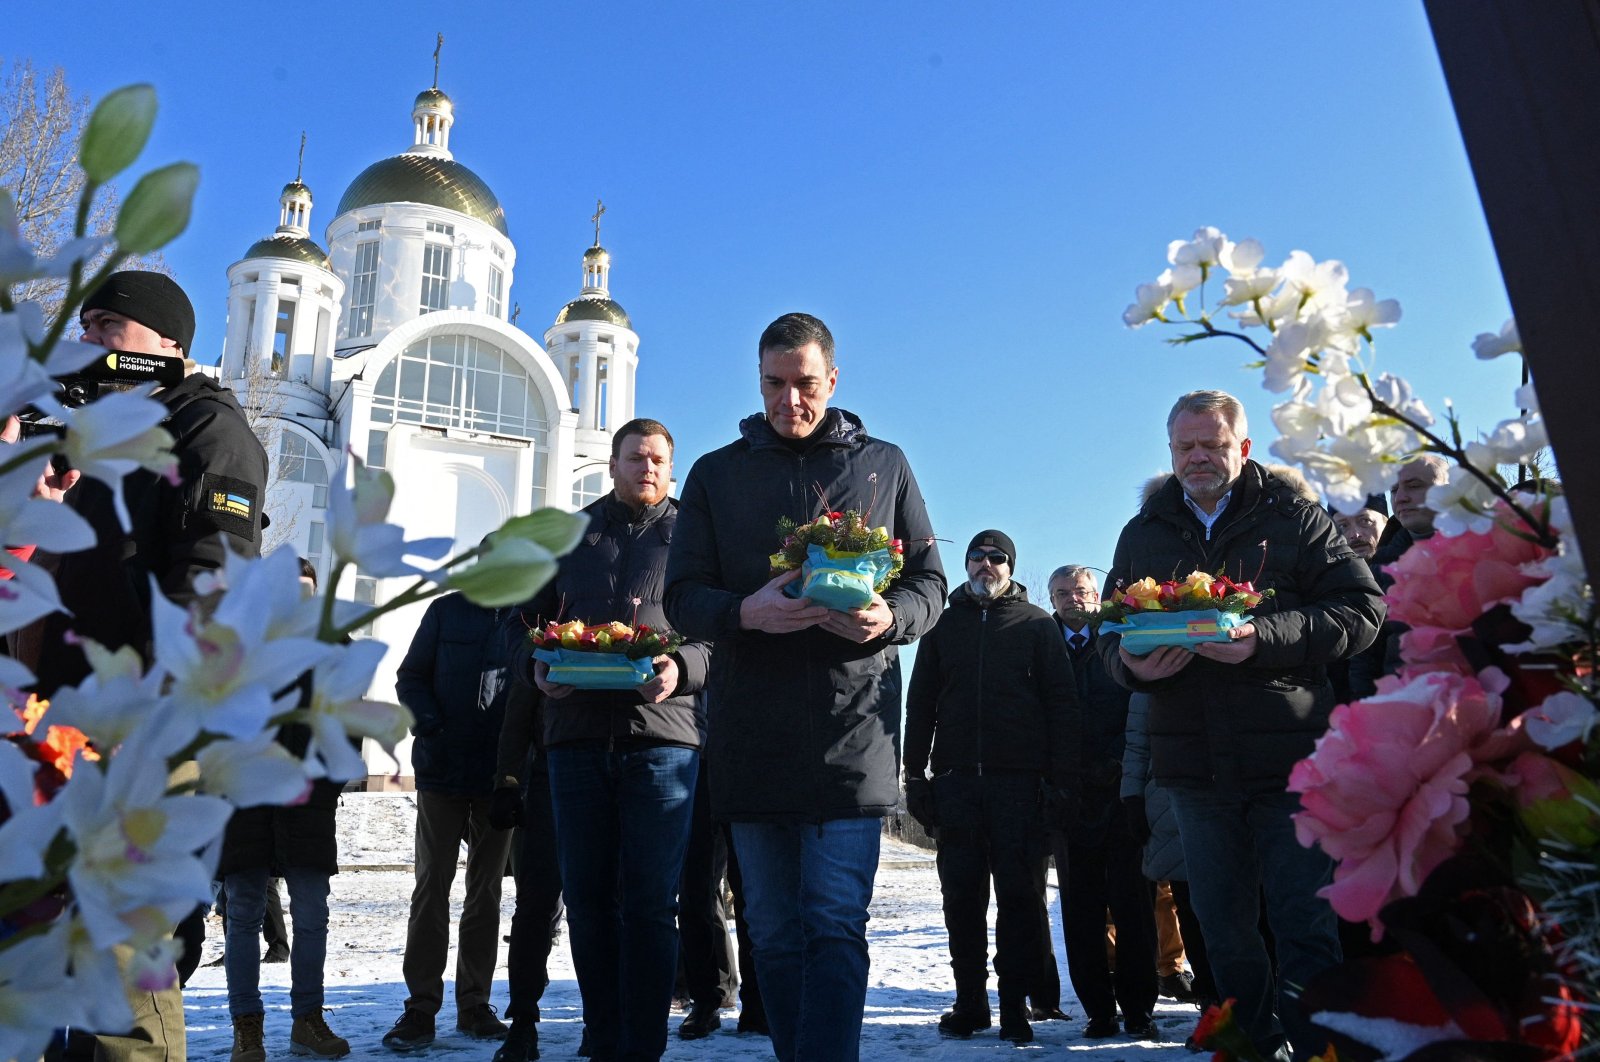 PM Spanyol Sanchez mengunjungi Kyiv menjelang peringatan 1 tahun perang